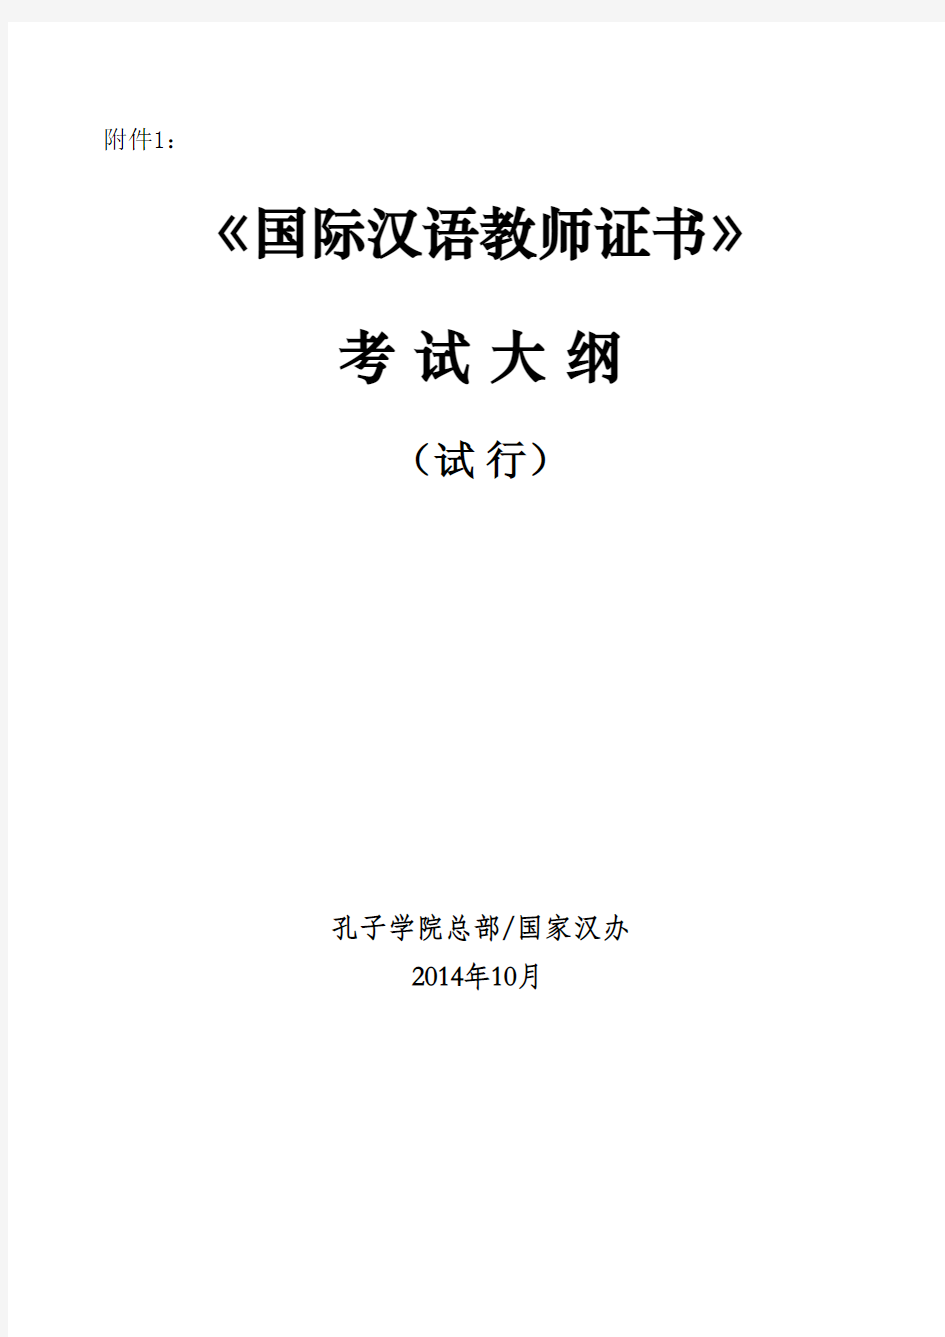 1：国际汉语教师资格考试大纲(试行) (1)